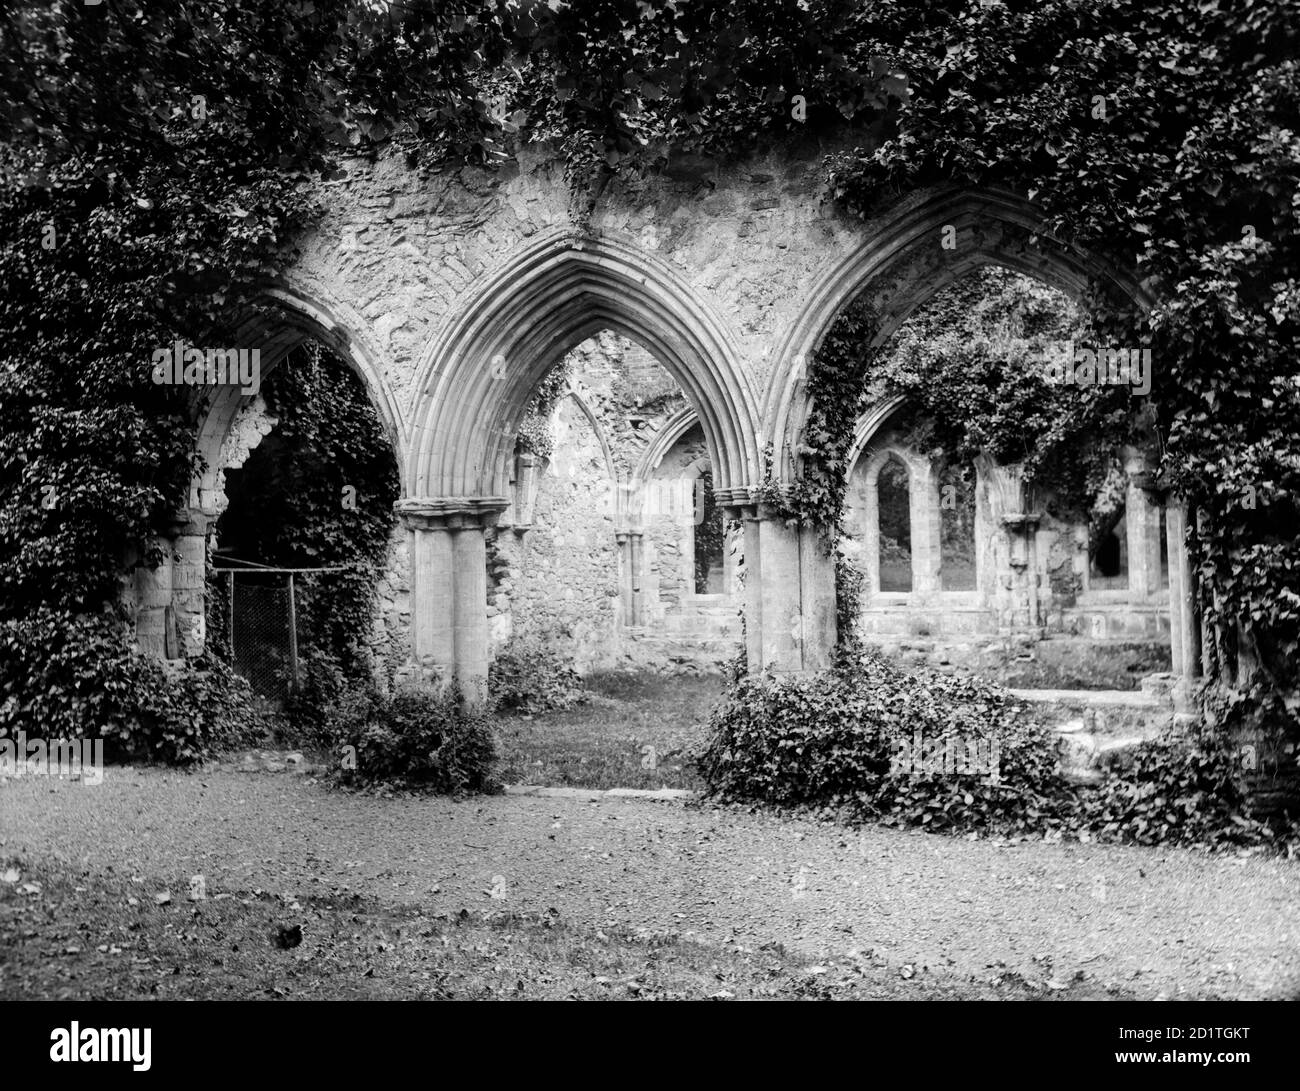 ABBAYE DE NETLEY, Hampshire. Les arches de la Maison du Chapitre dans cette abbaye cistercienne, qui ont été conçues pour permettre aux personnes à l'extérieur de la salle d'entendre les discussions qui se tiennent à l'intérieur. Photographié par Henry Taunt (actif 1860 - 1922). Banque D'Images